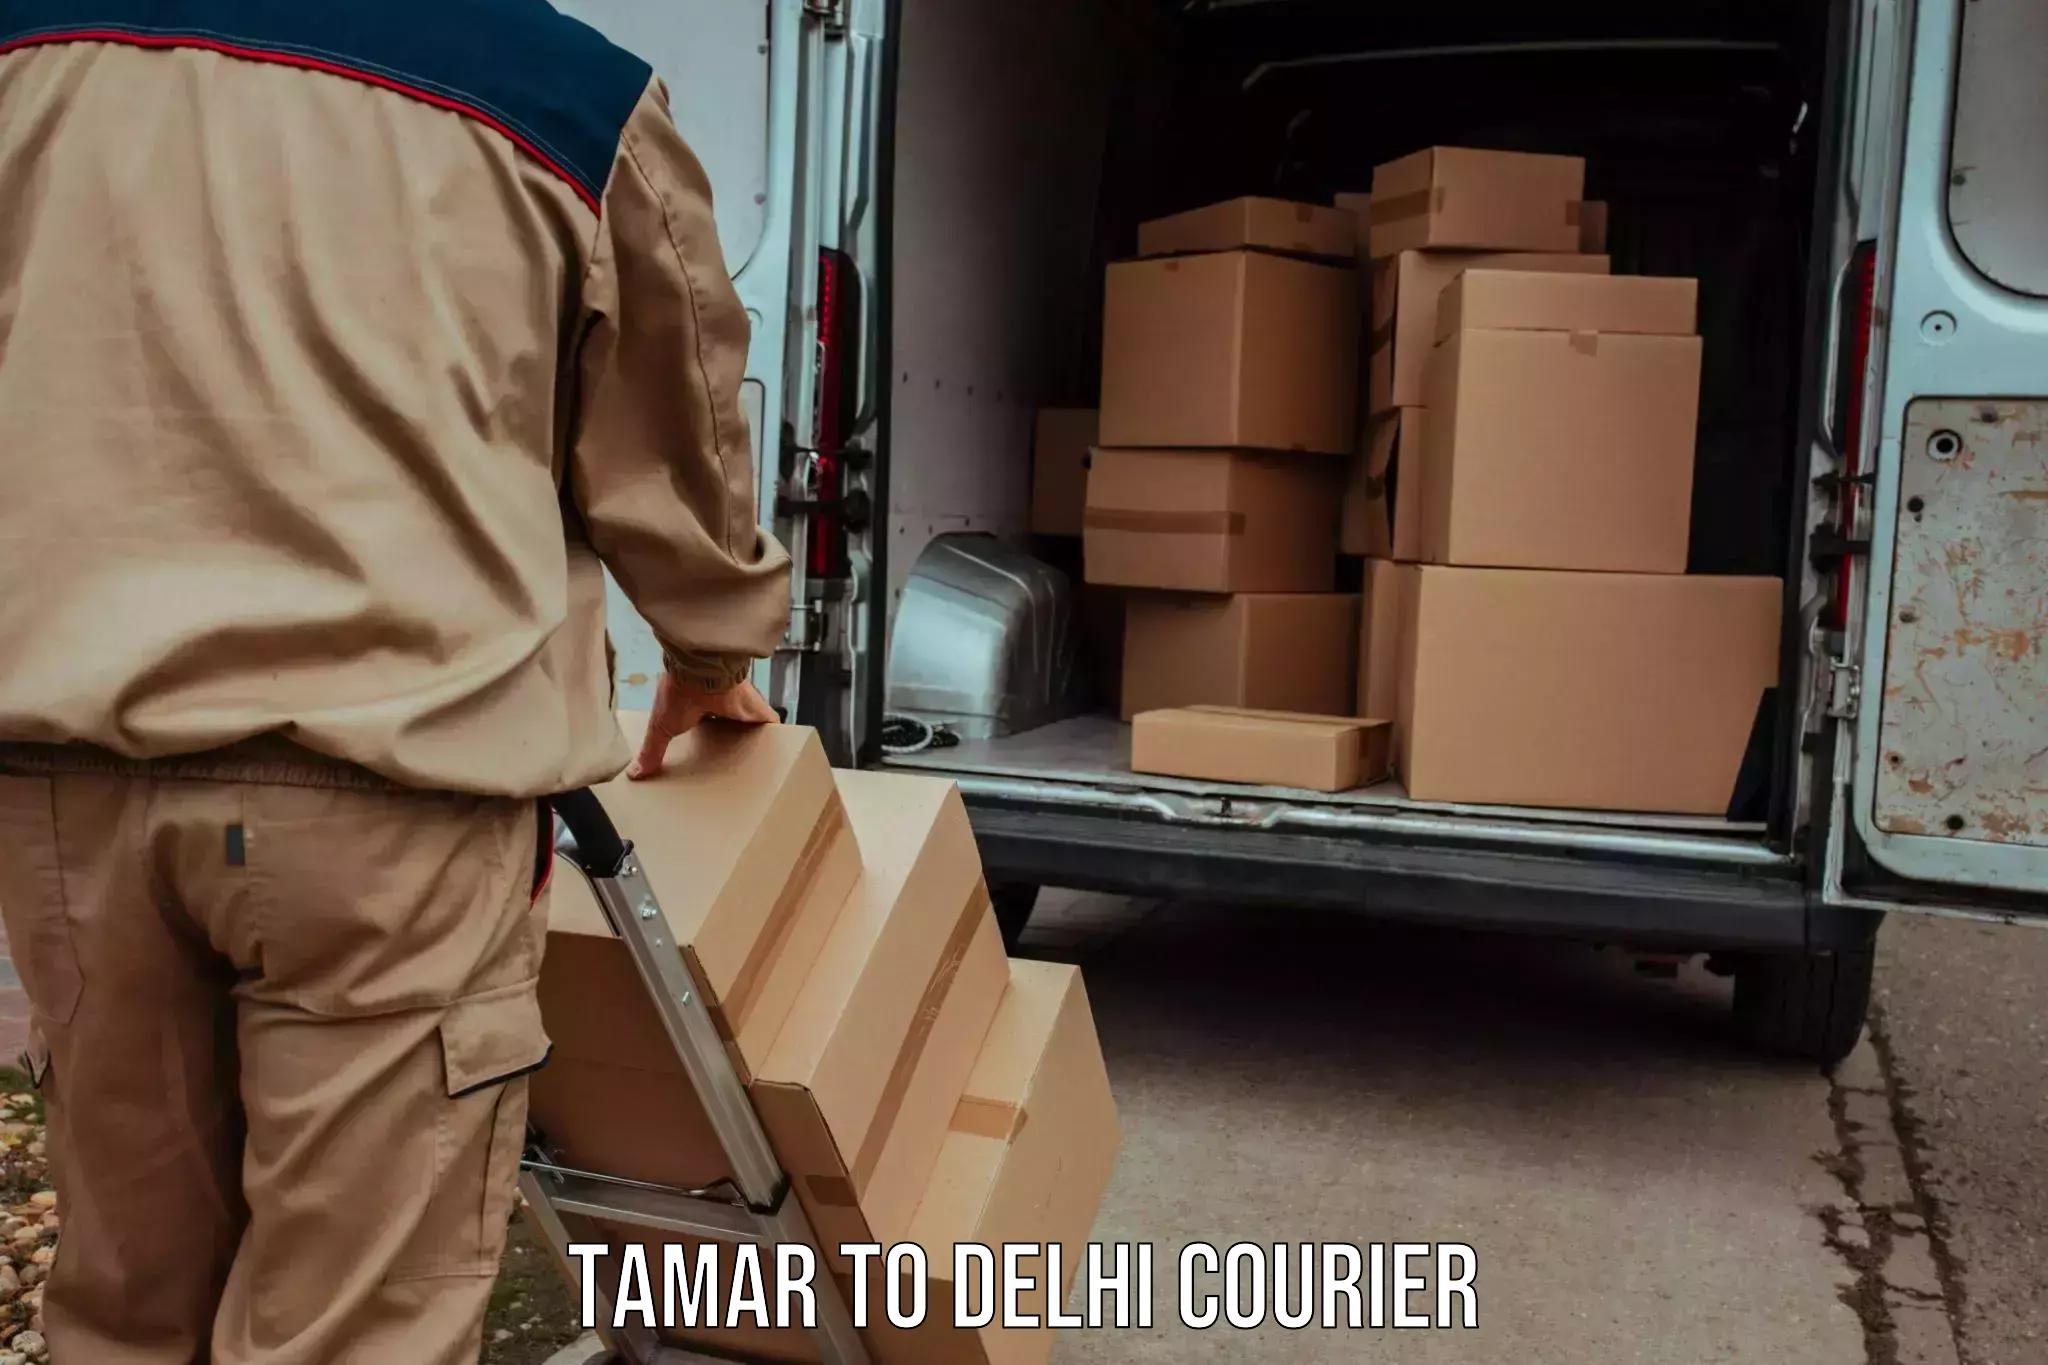 Global logistics network Tamar to NIT Delhi